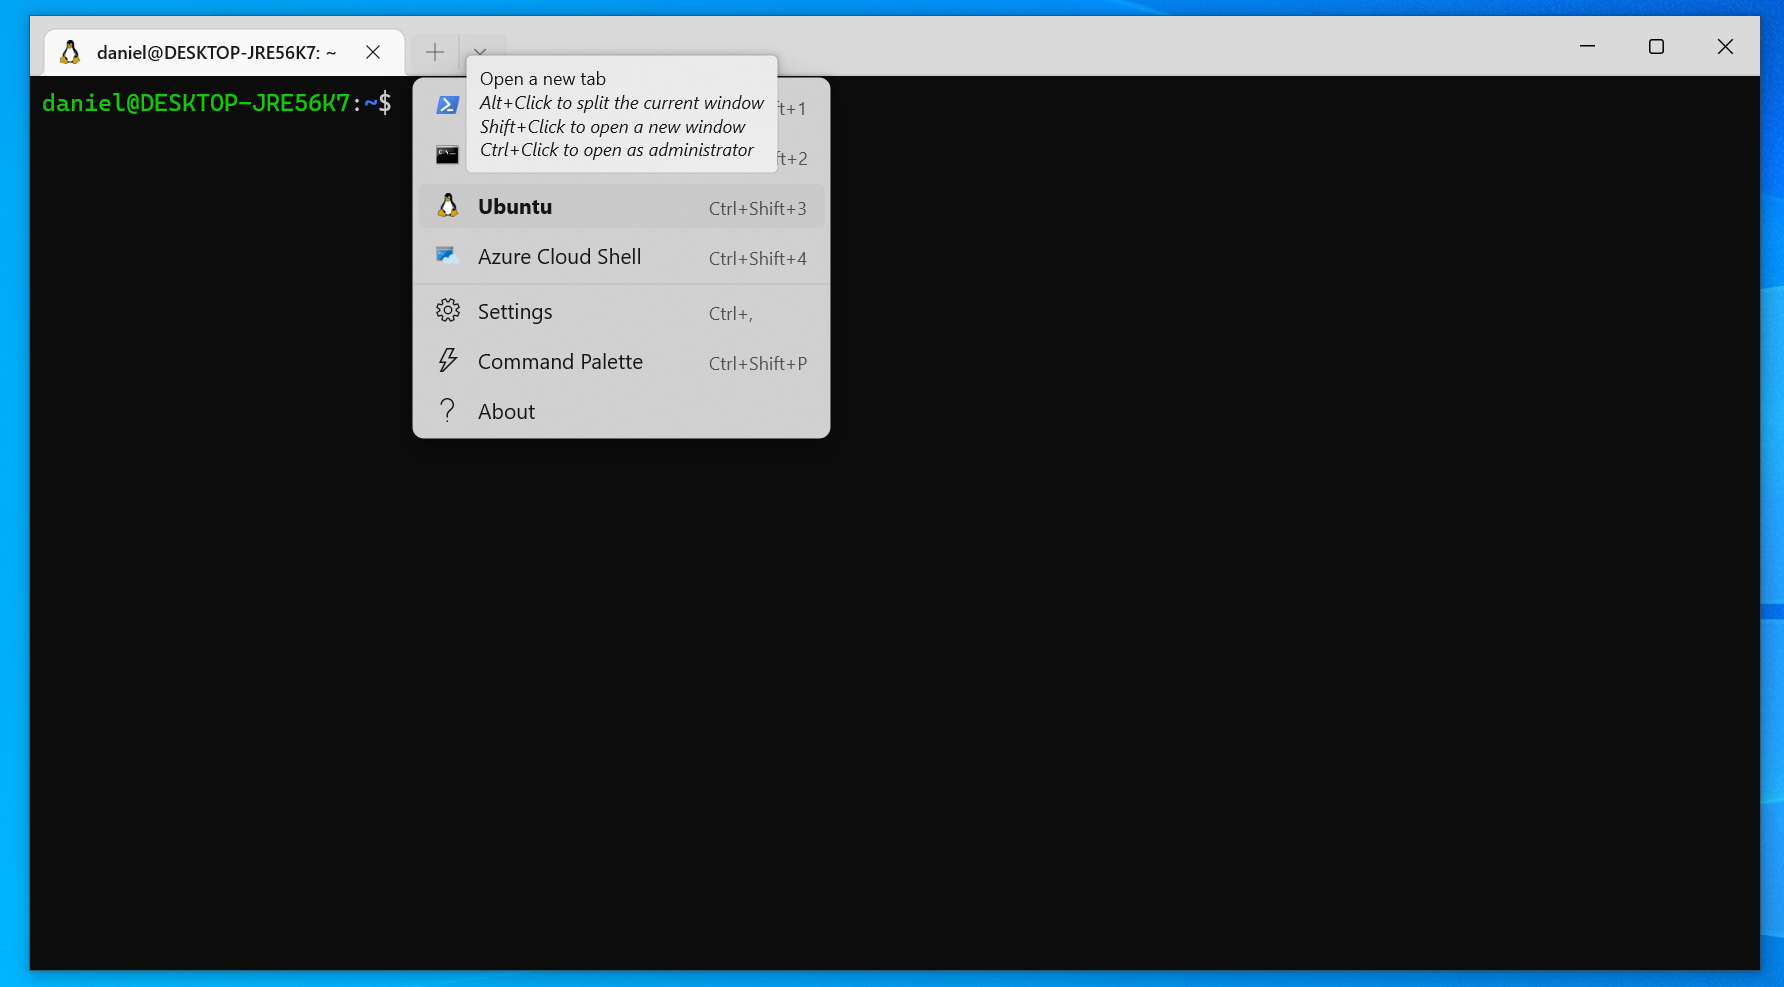 Öffnen eines neuen Tabs im Windows Terminal durch Klicken auf den "Pfeil runter"